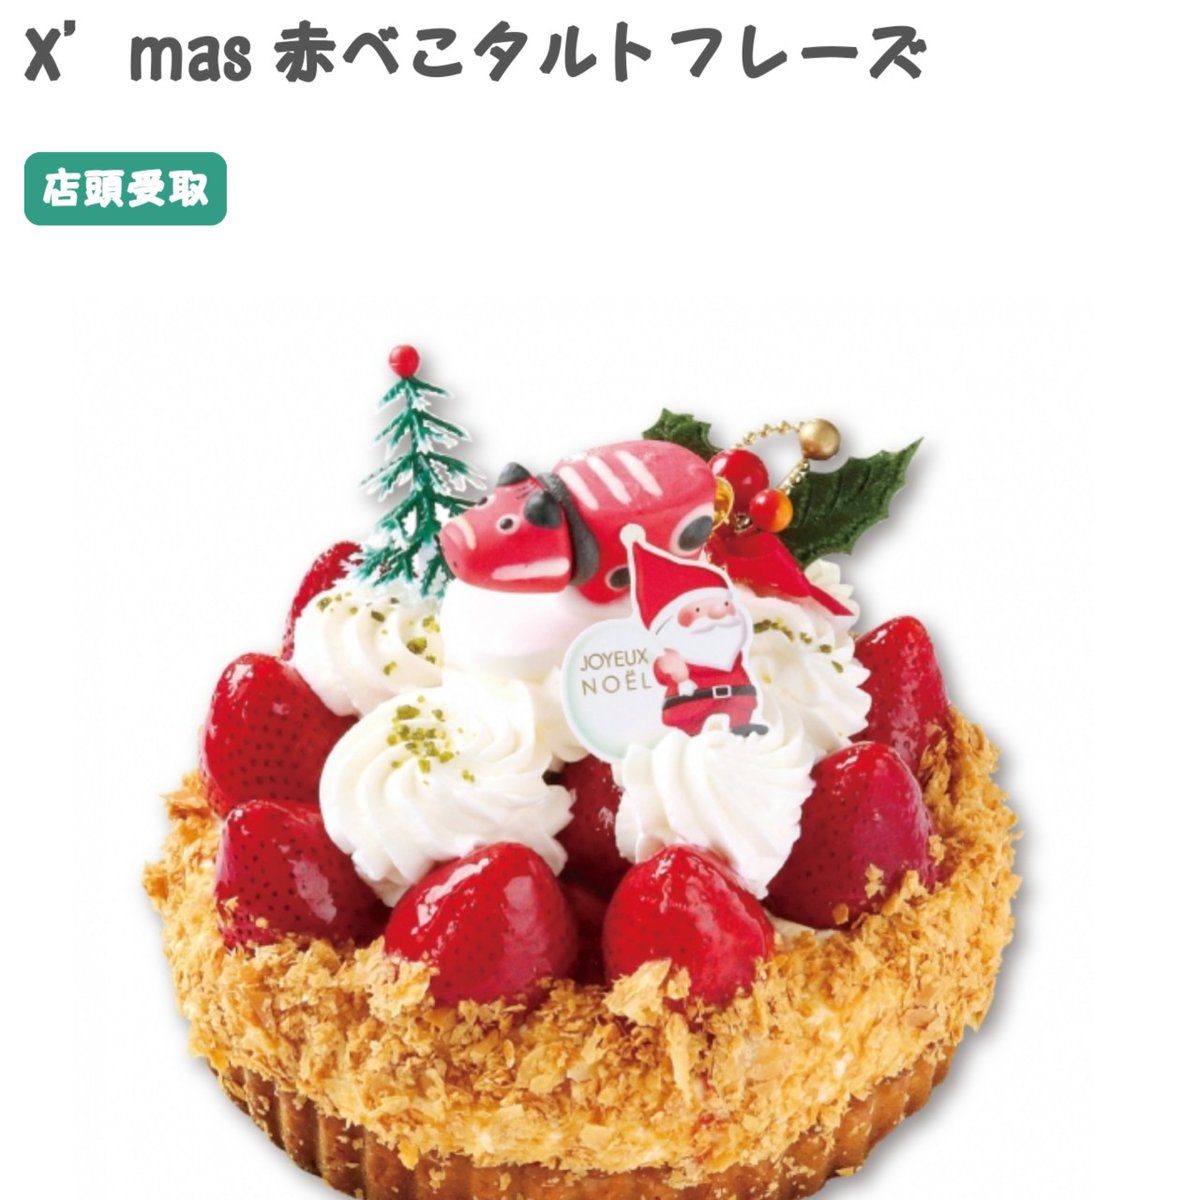 寅吉 太郎庵のクリスマスケーキ が羨ましすぎる 赤べこかわいい いいなぁいいなぁ 静岡でも買えたらいいのに 赤べこさえあれば ケーキ にのせれるのに って それじゃ意味ないか 太郎庵のケーキすごく美味しいし ああ 食べたいっ 太郎庵